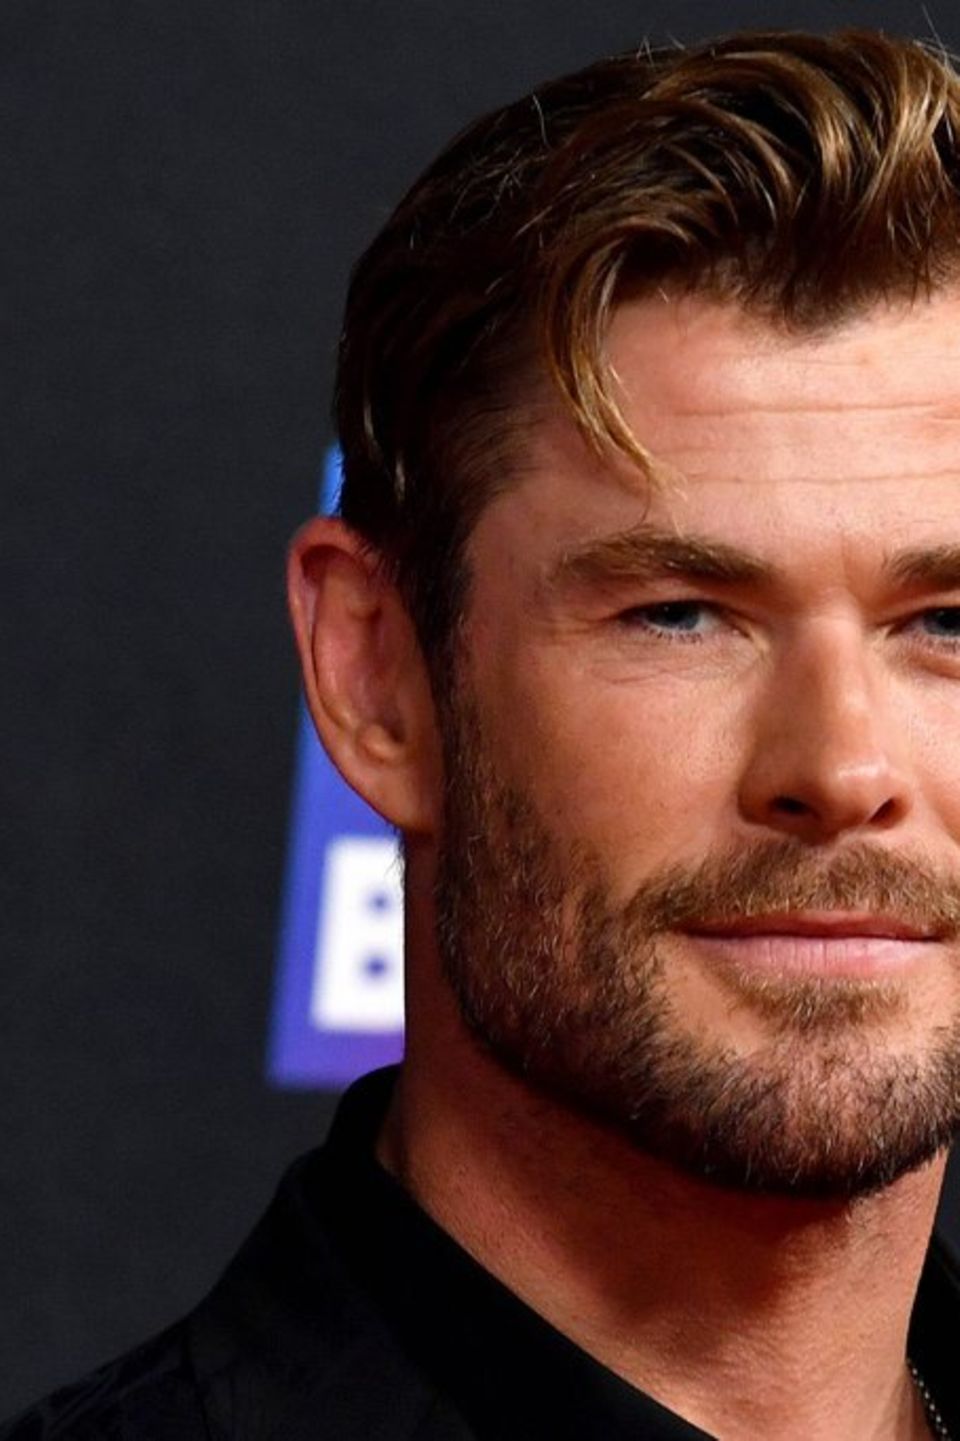 Chris Hemsworth wird in wenigen Wochen 40 Jahre alt.